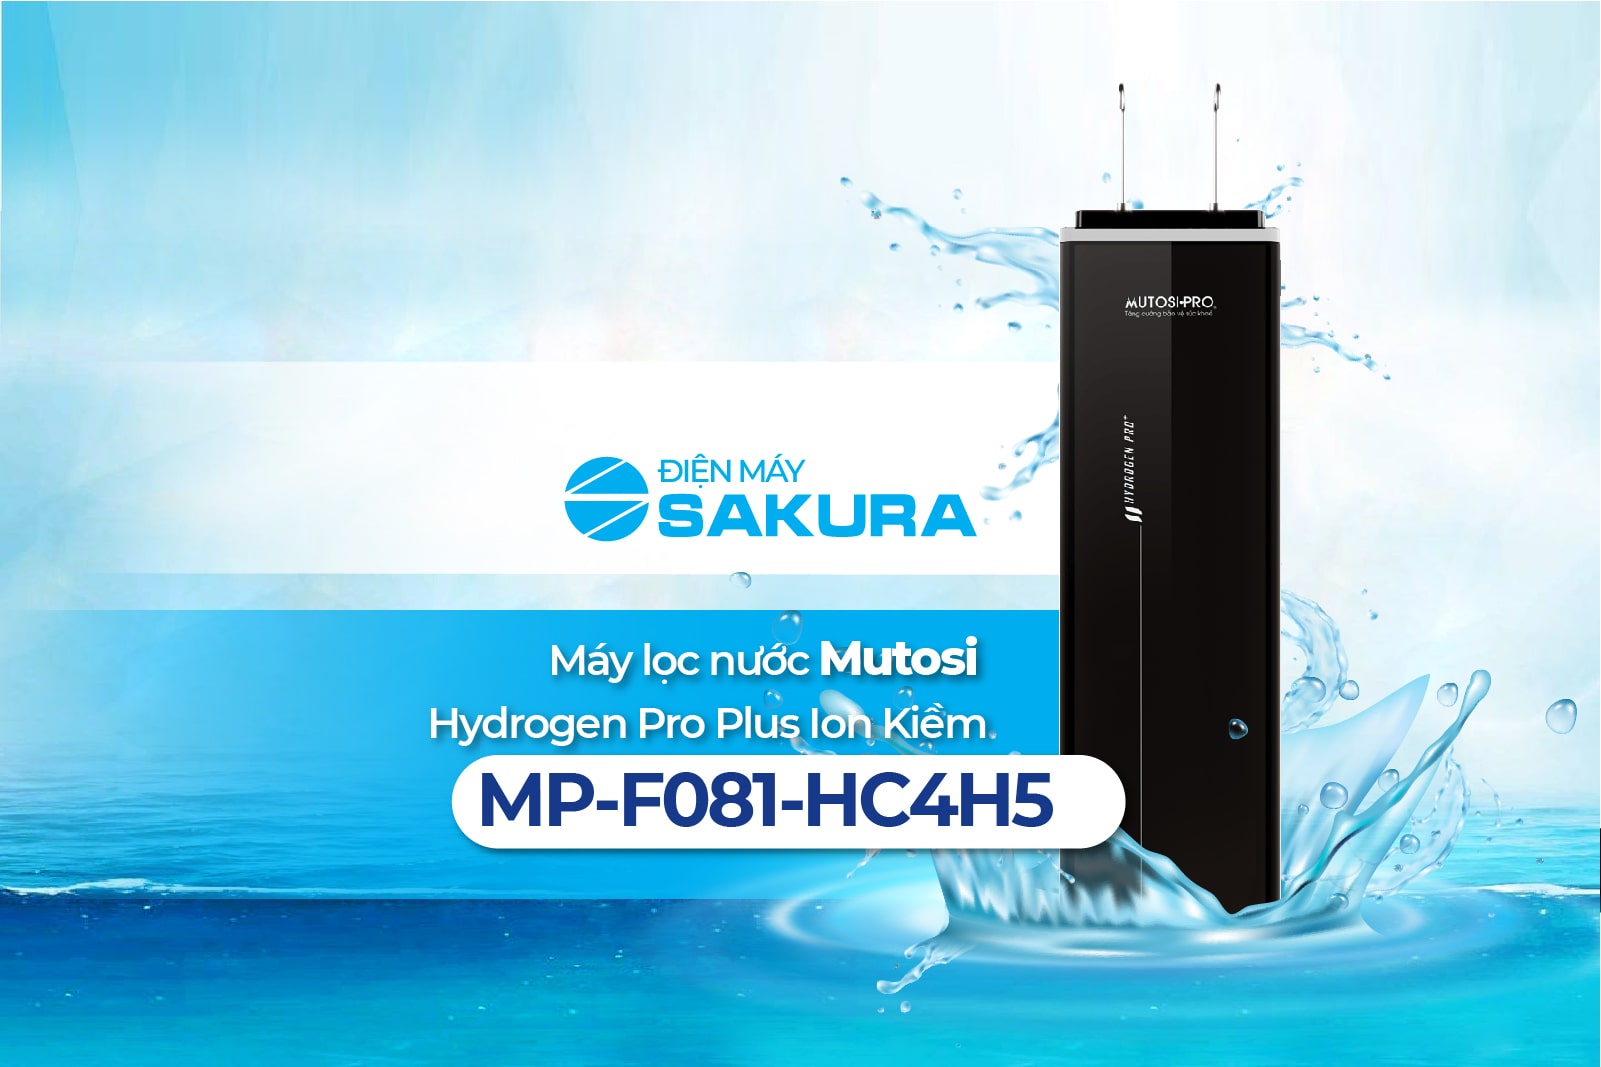 Máy lọc nước Mutosi Hydrogen Pro Plus Ion Kiềm MP-F081-HC4H5